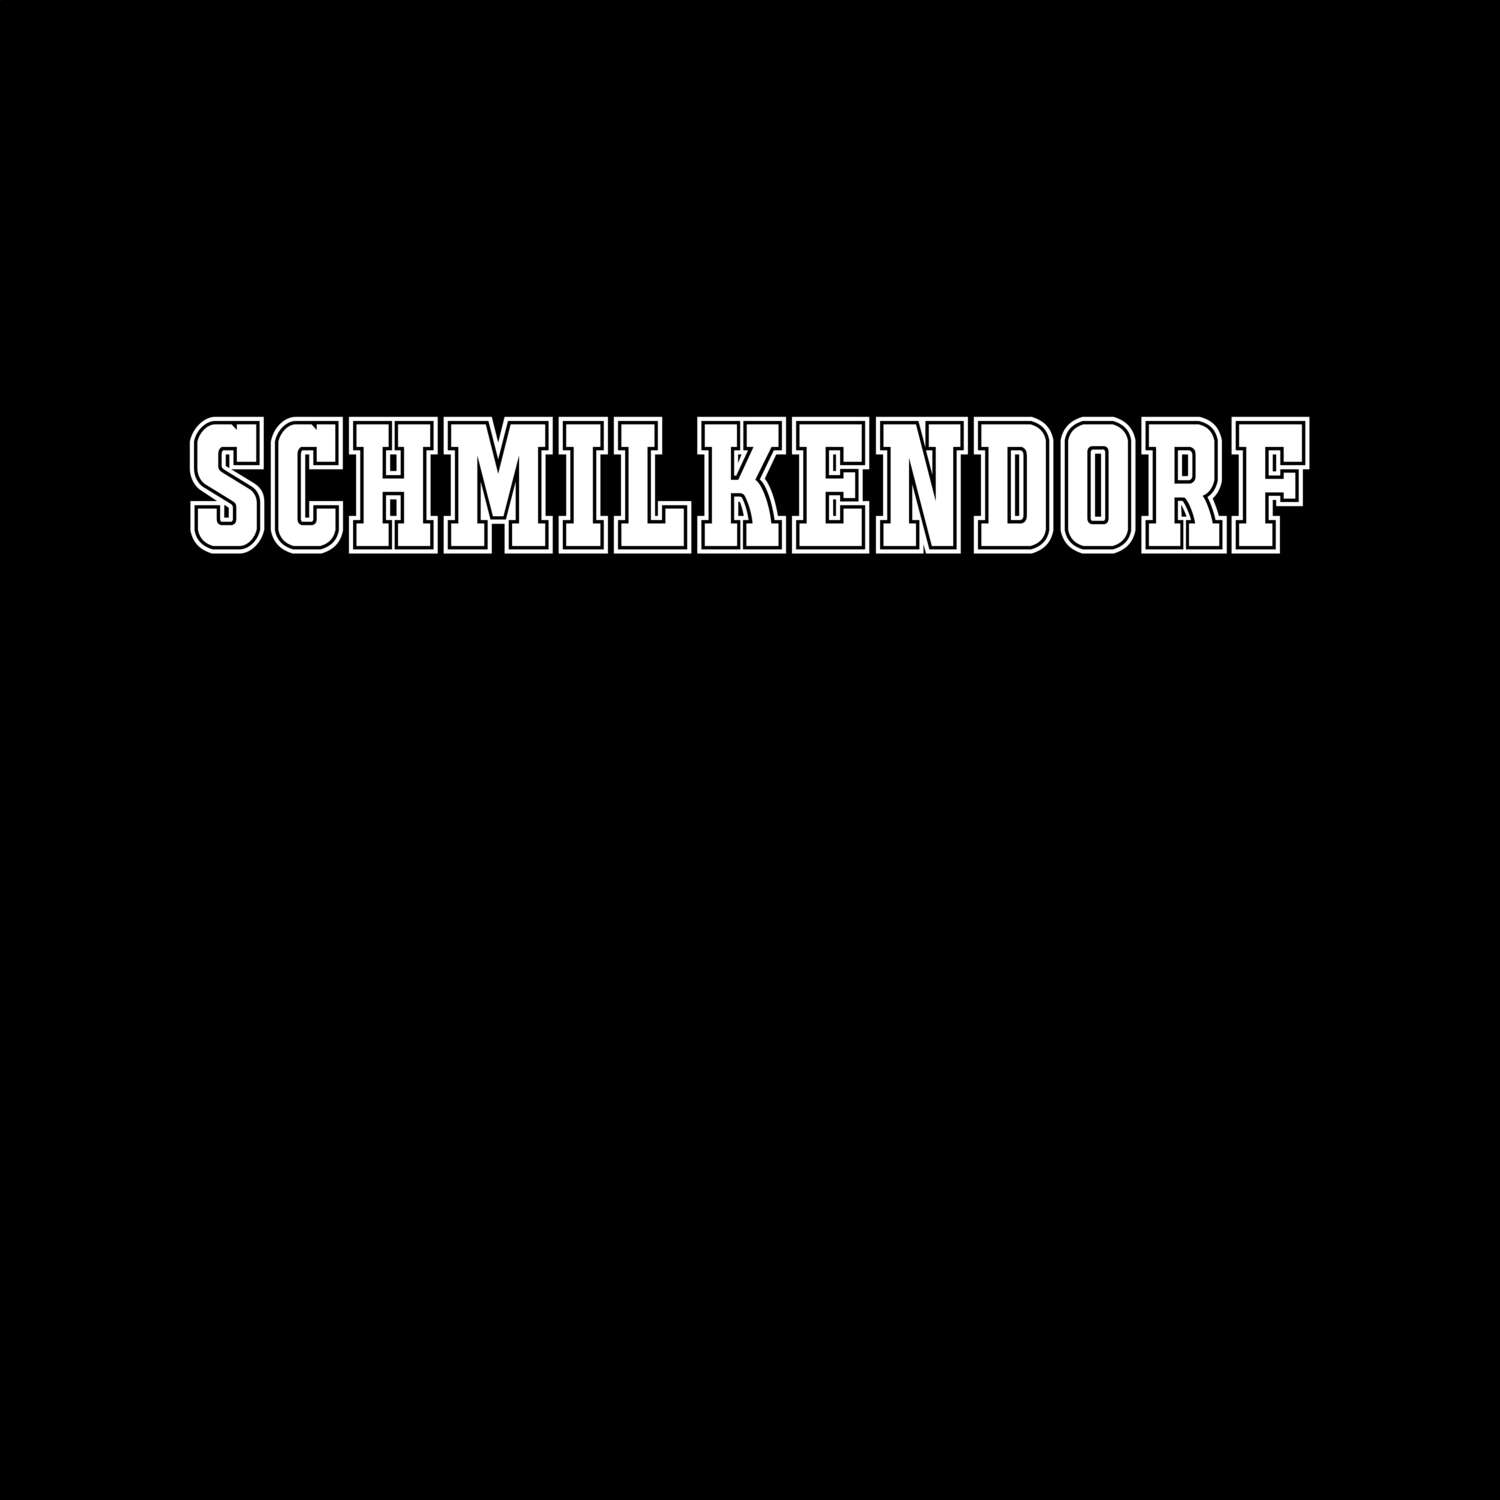 Schmilkendorf T-Shirt »Classic«